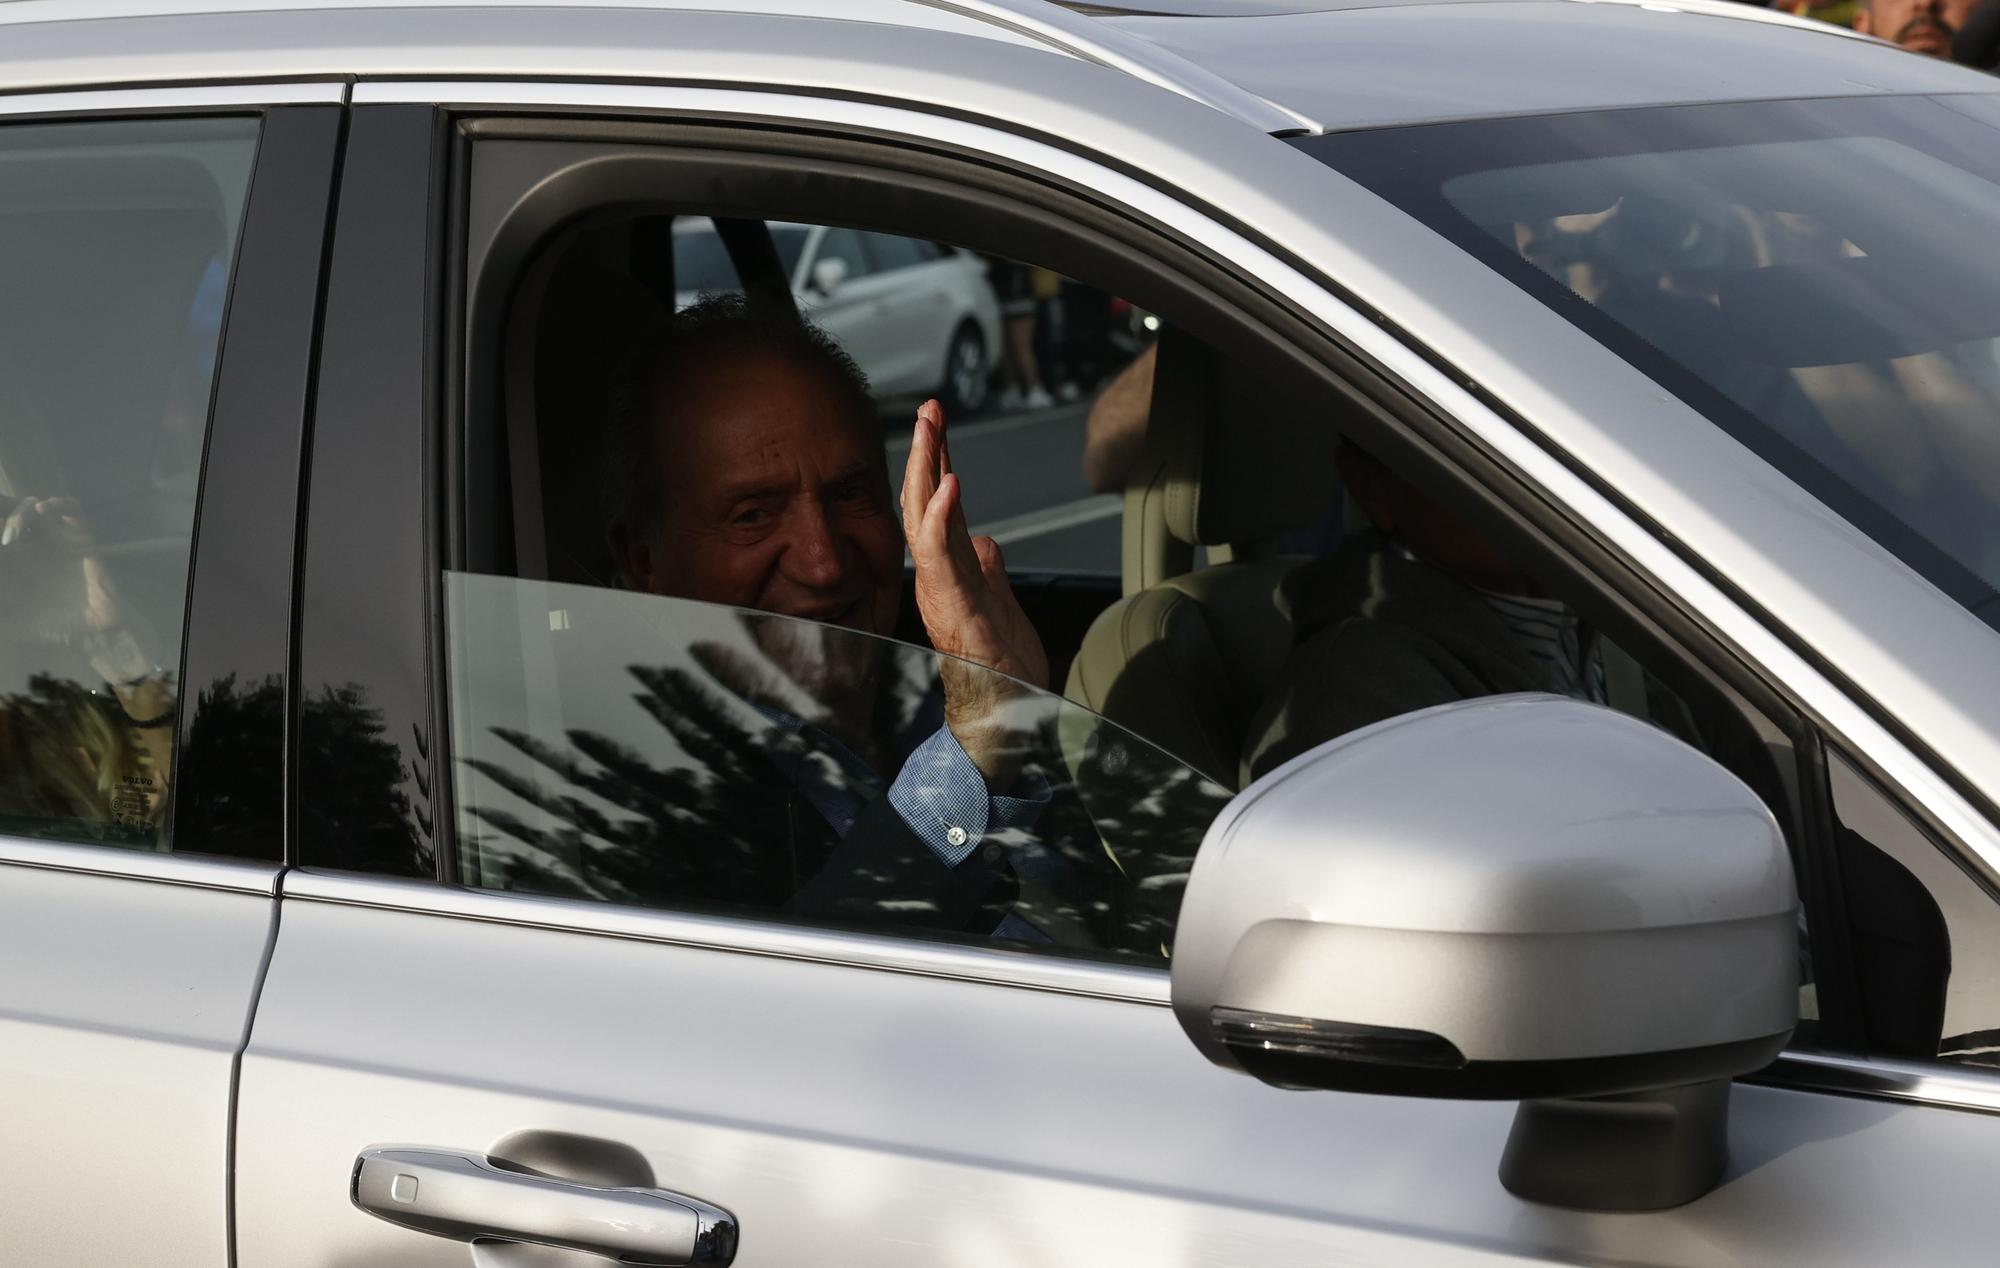 El rey Juan Carlos llega a Vigo tras 21 meses fuera de España